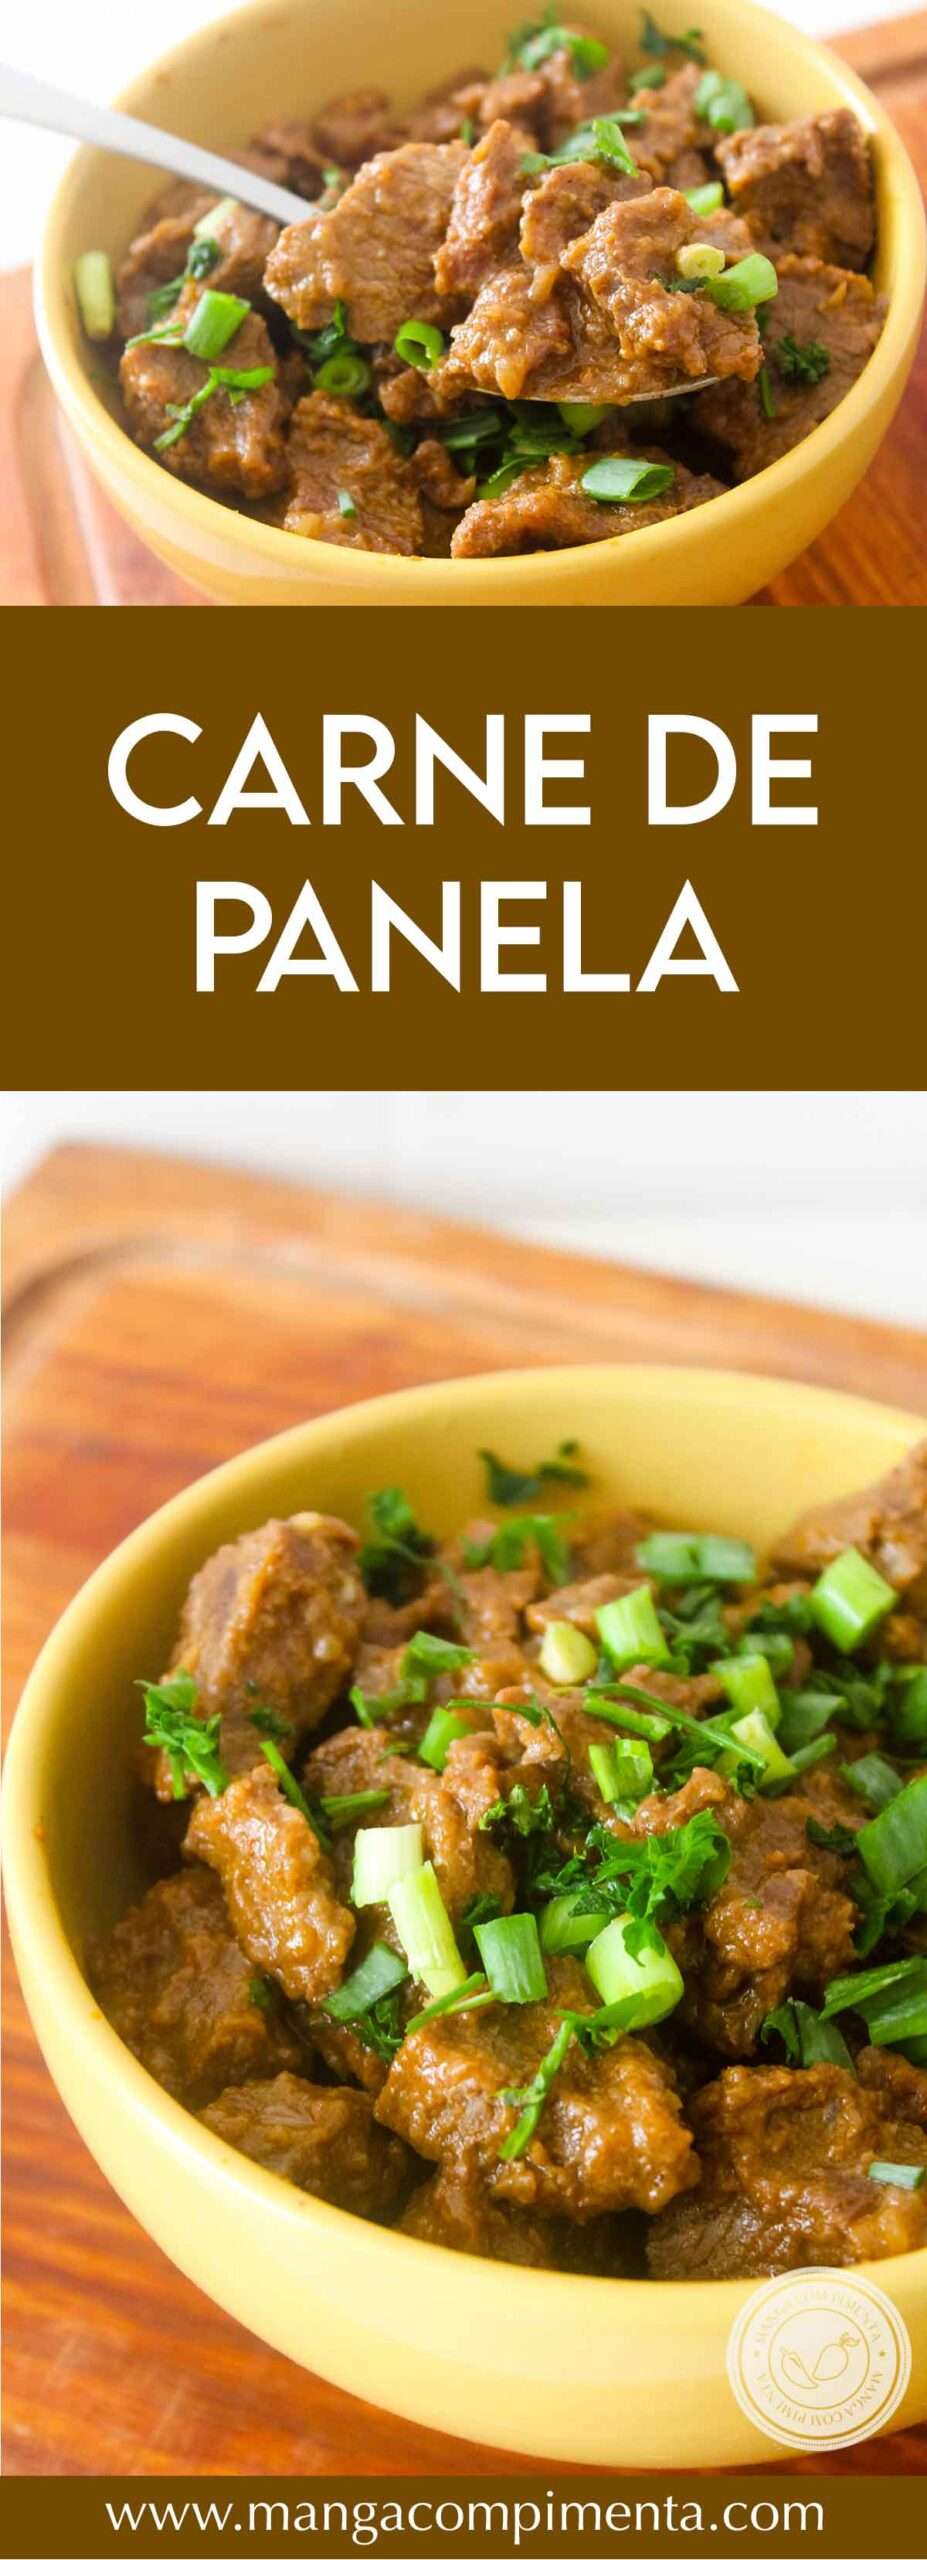 Receita de Carne de Panela - prepare um prato simples, porém delicioso no almoço da semana.